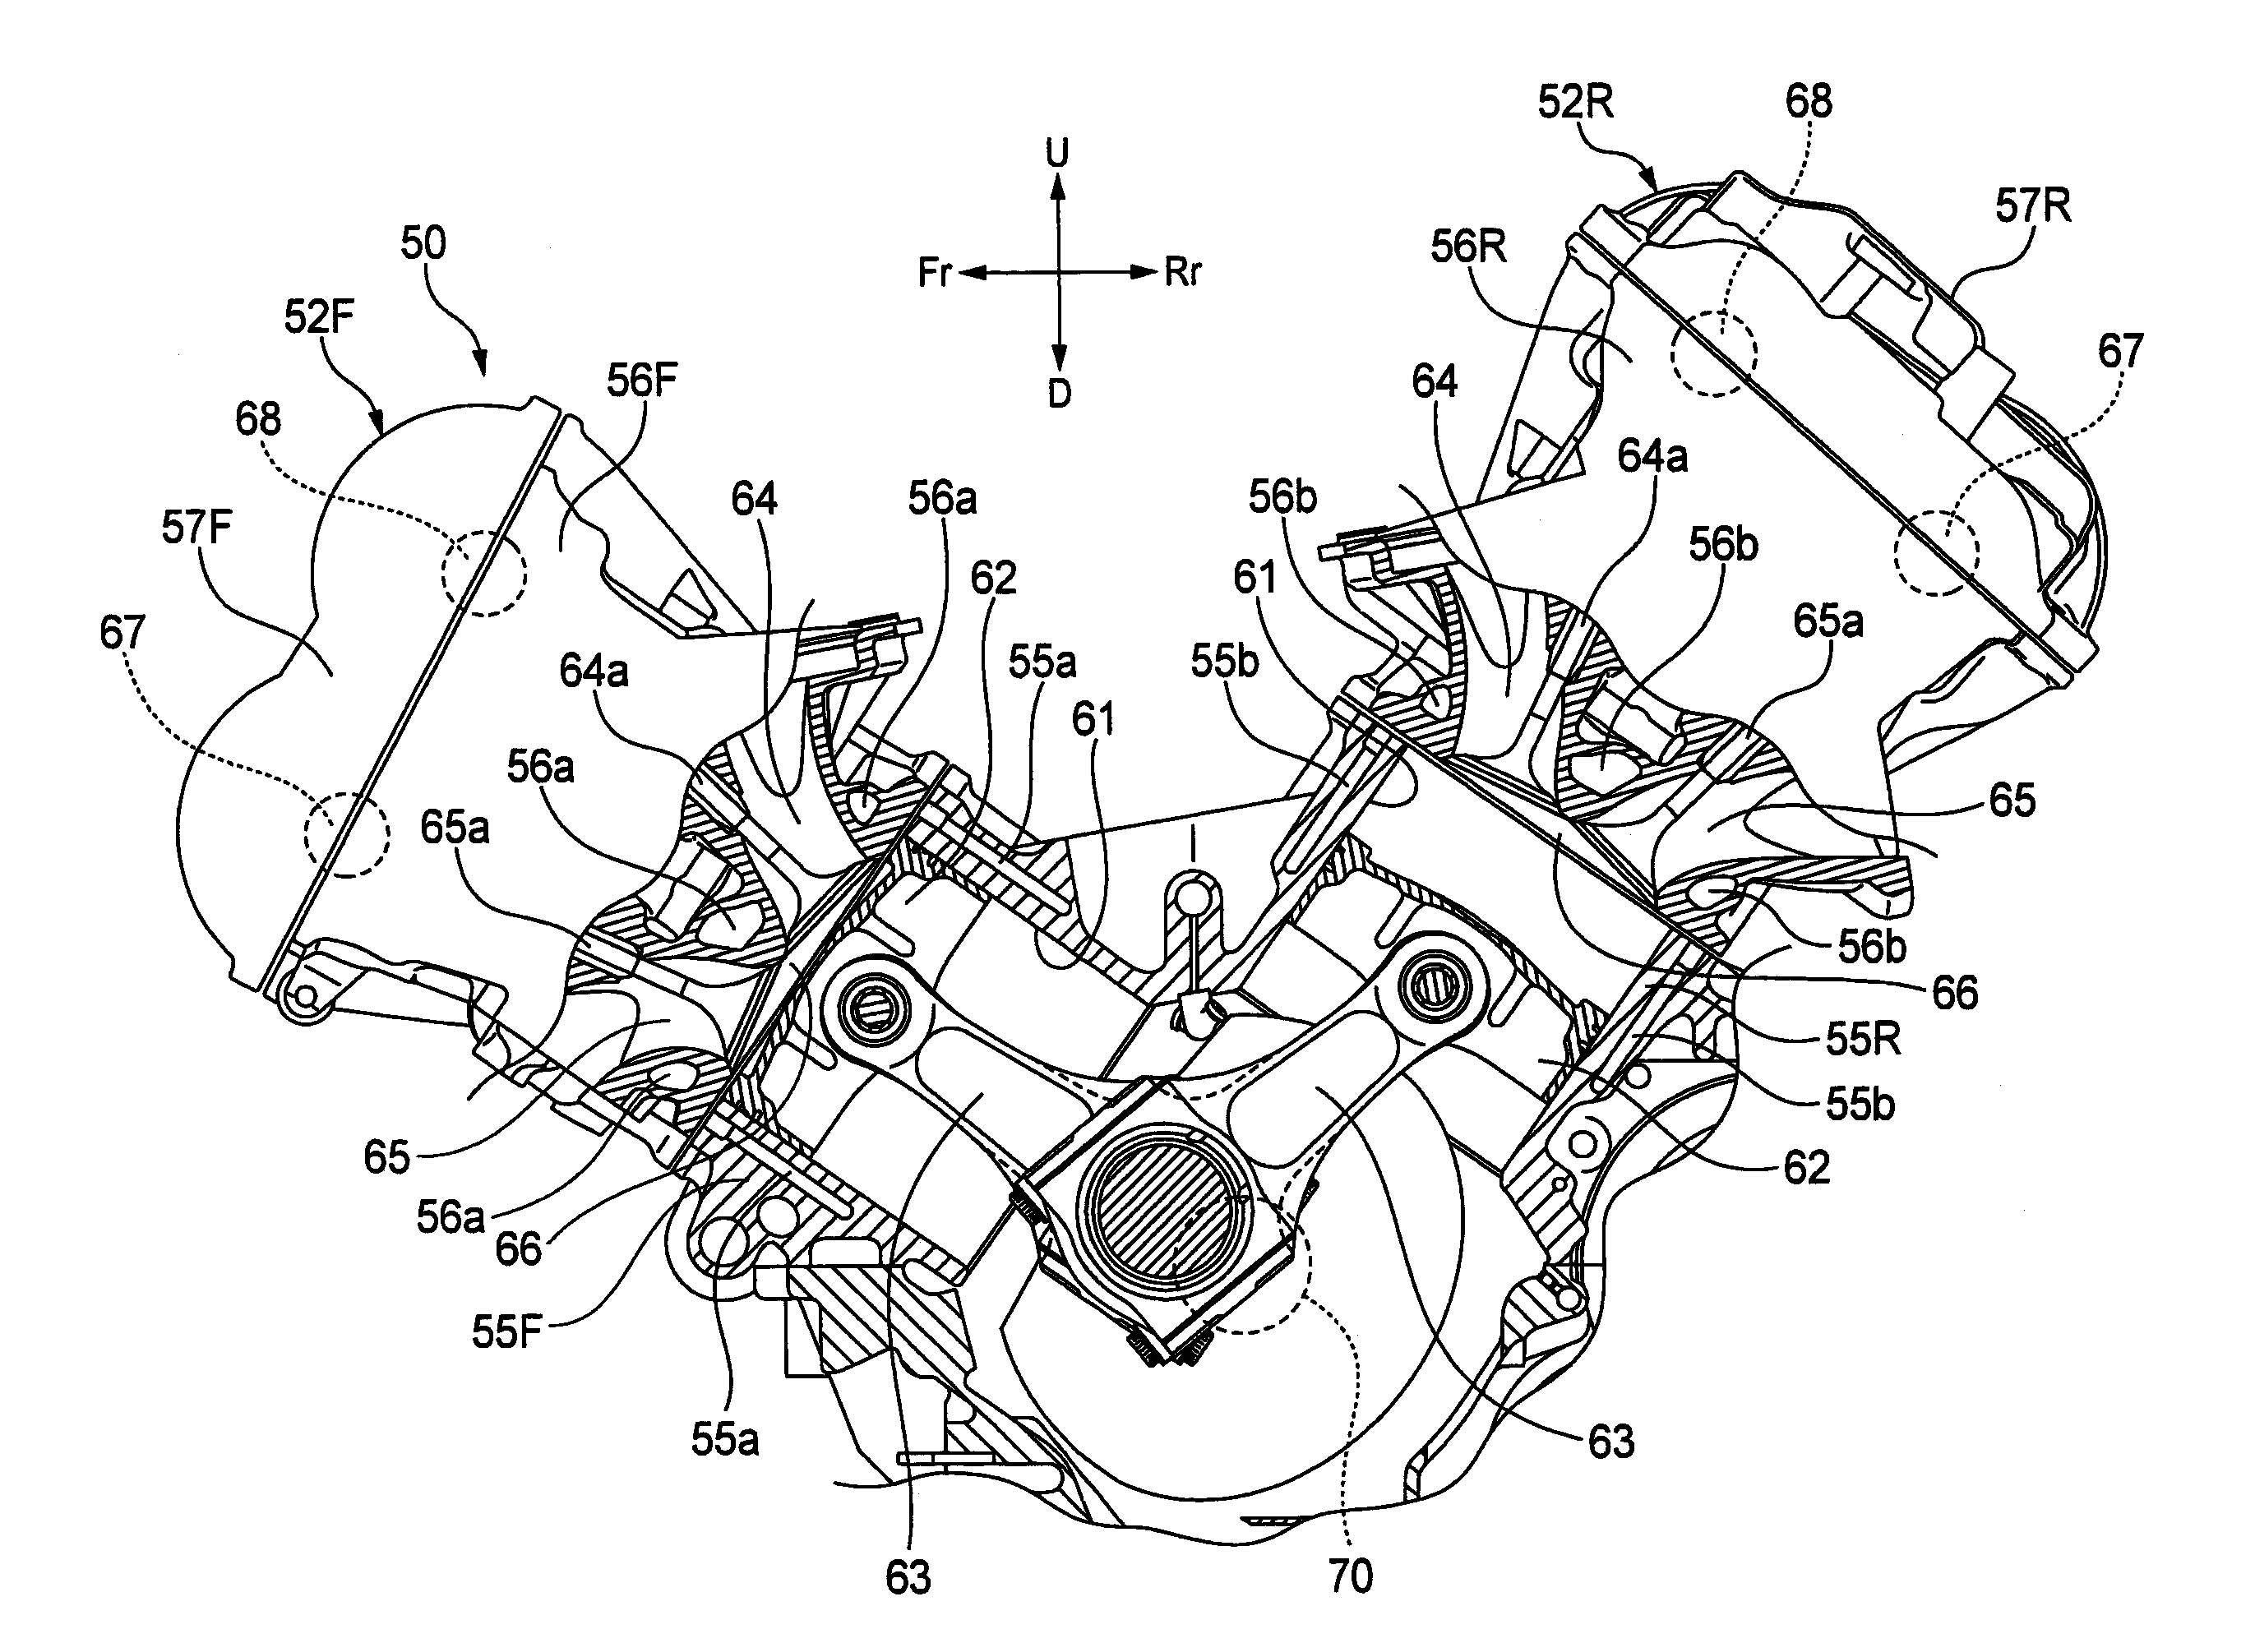 Honda Gx390 Parts Diagram Engine Parts Drawing at Getdrawings Of Honda Gx390 Parts Diagram